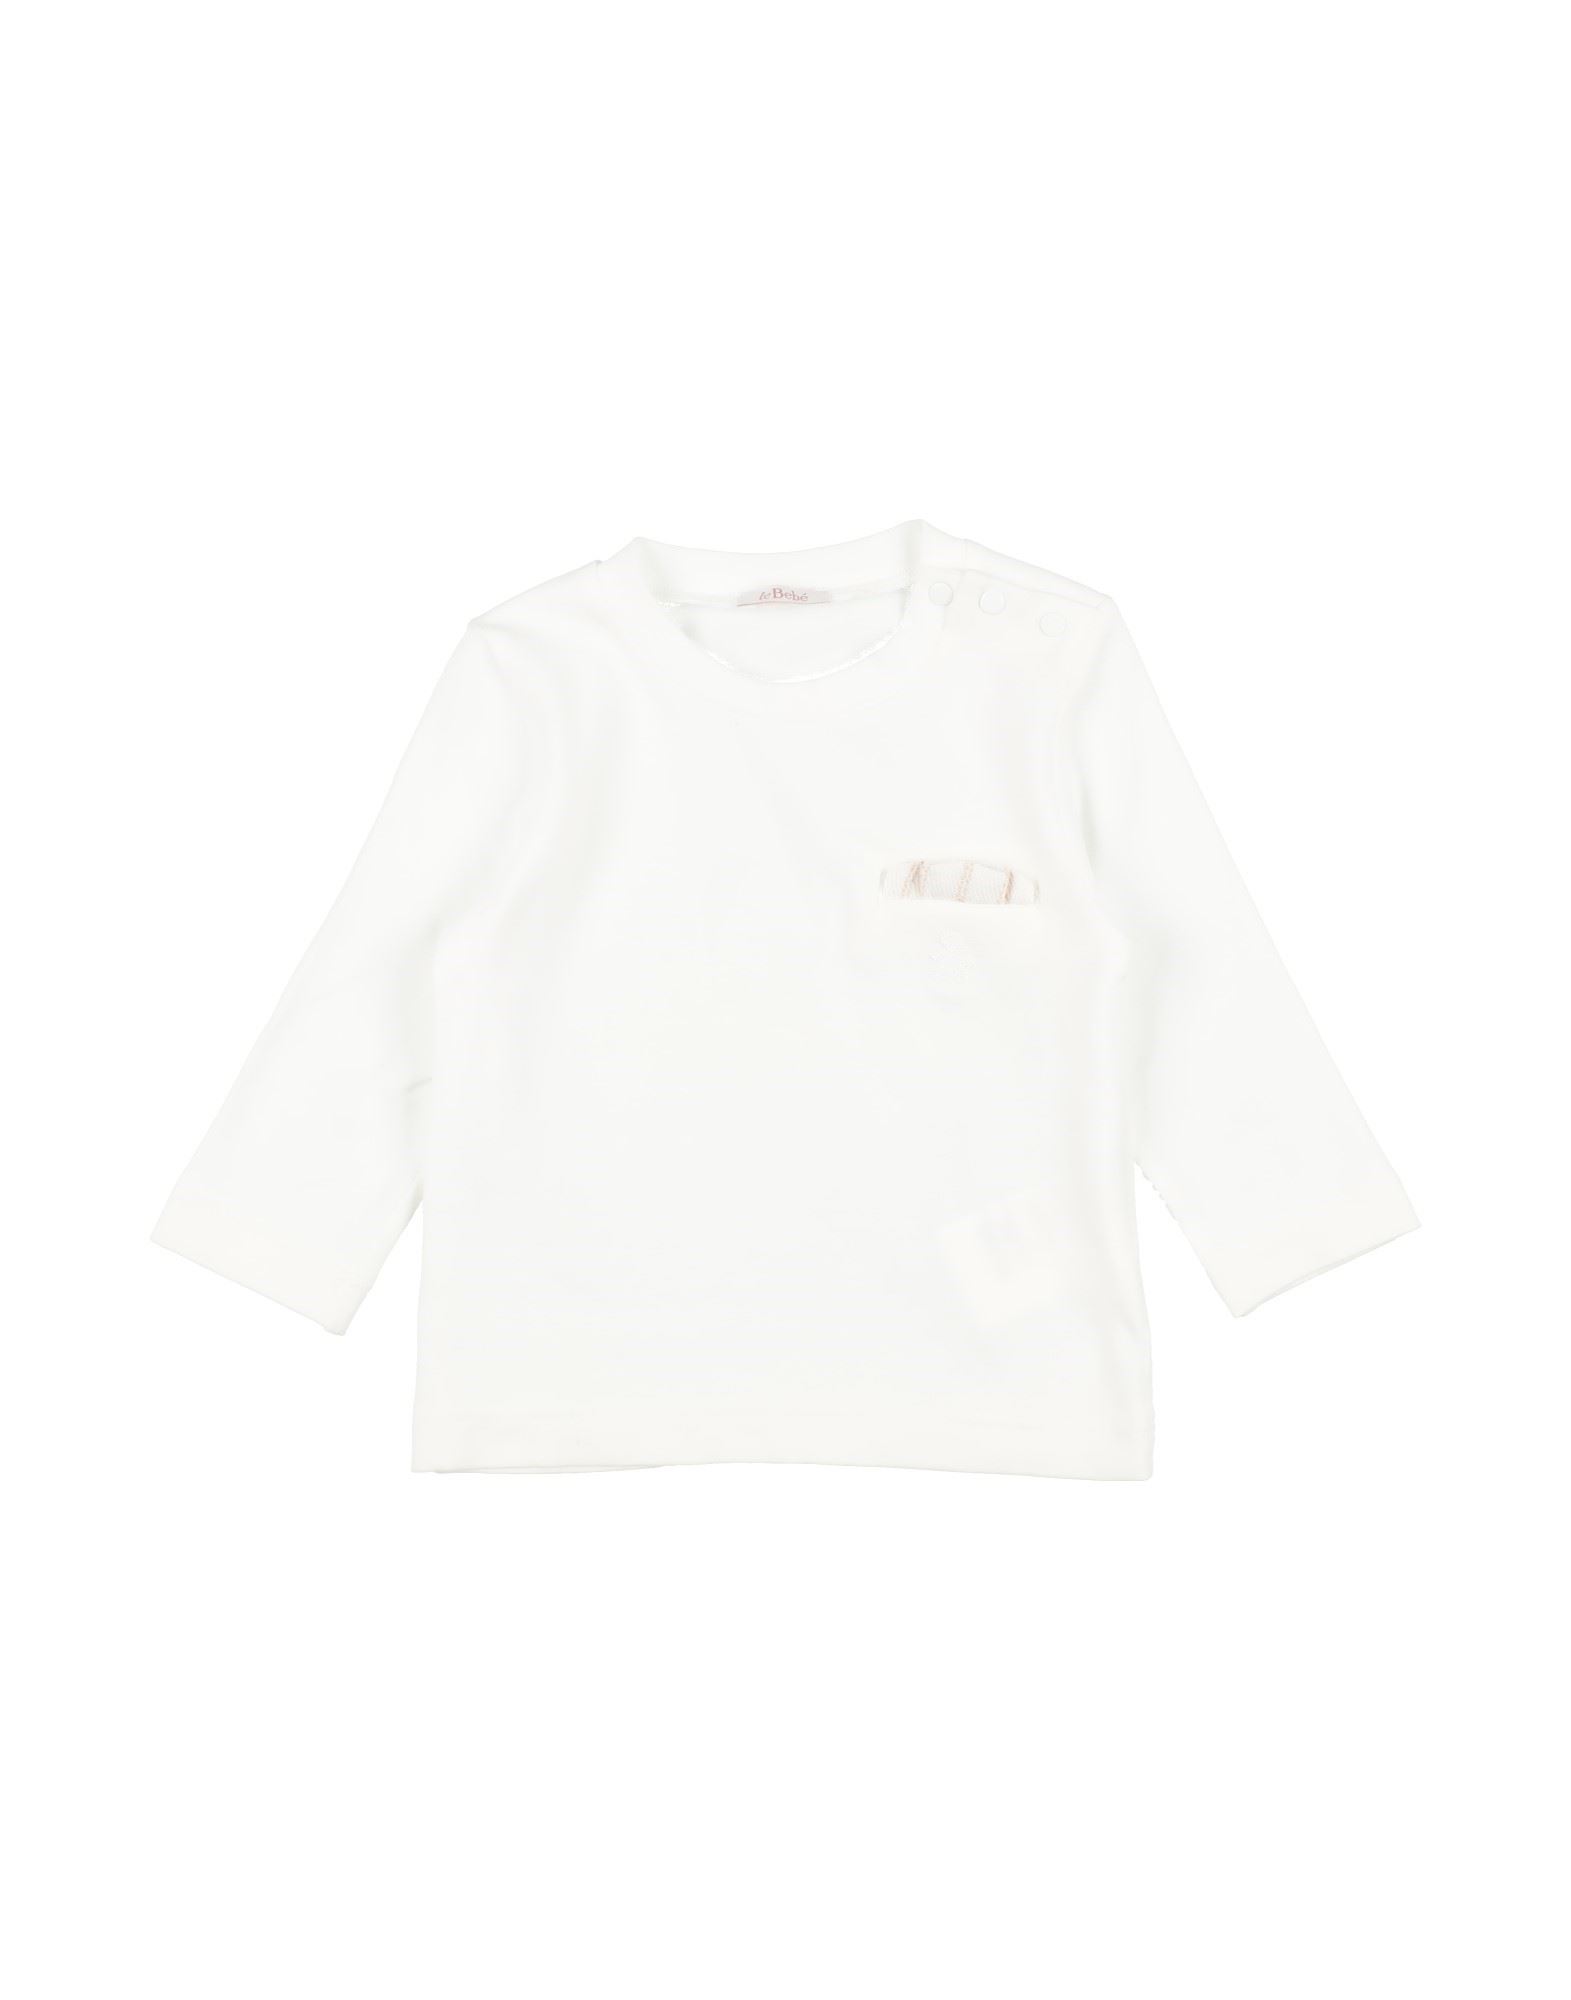 LE BEBÉ T-shirts Kinder Weiß von LE BEBÉ